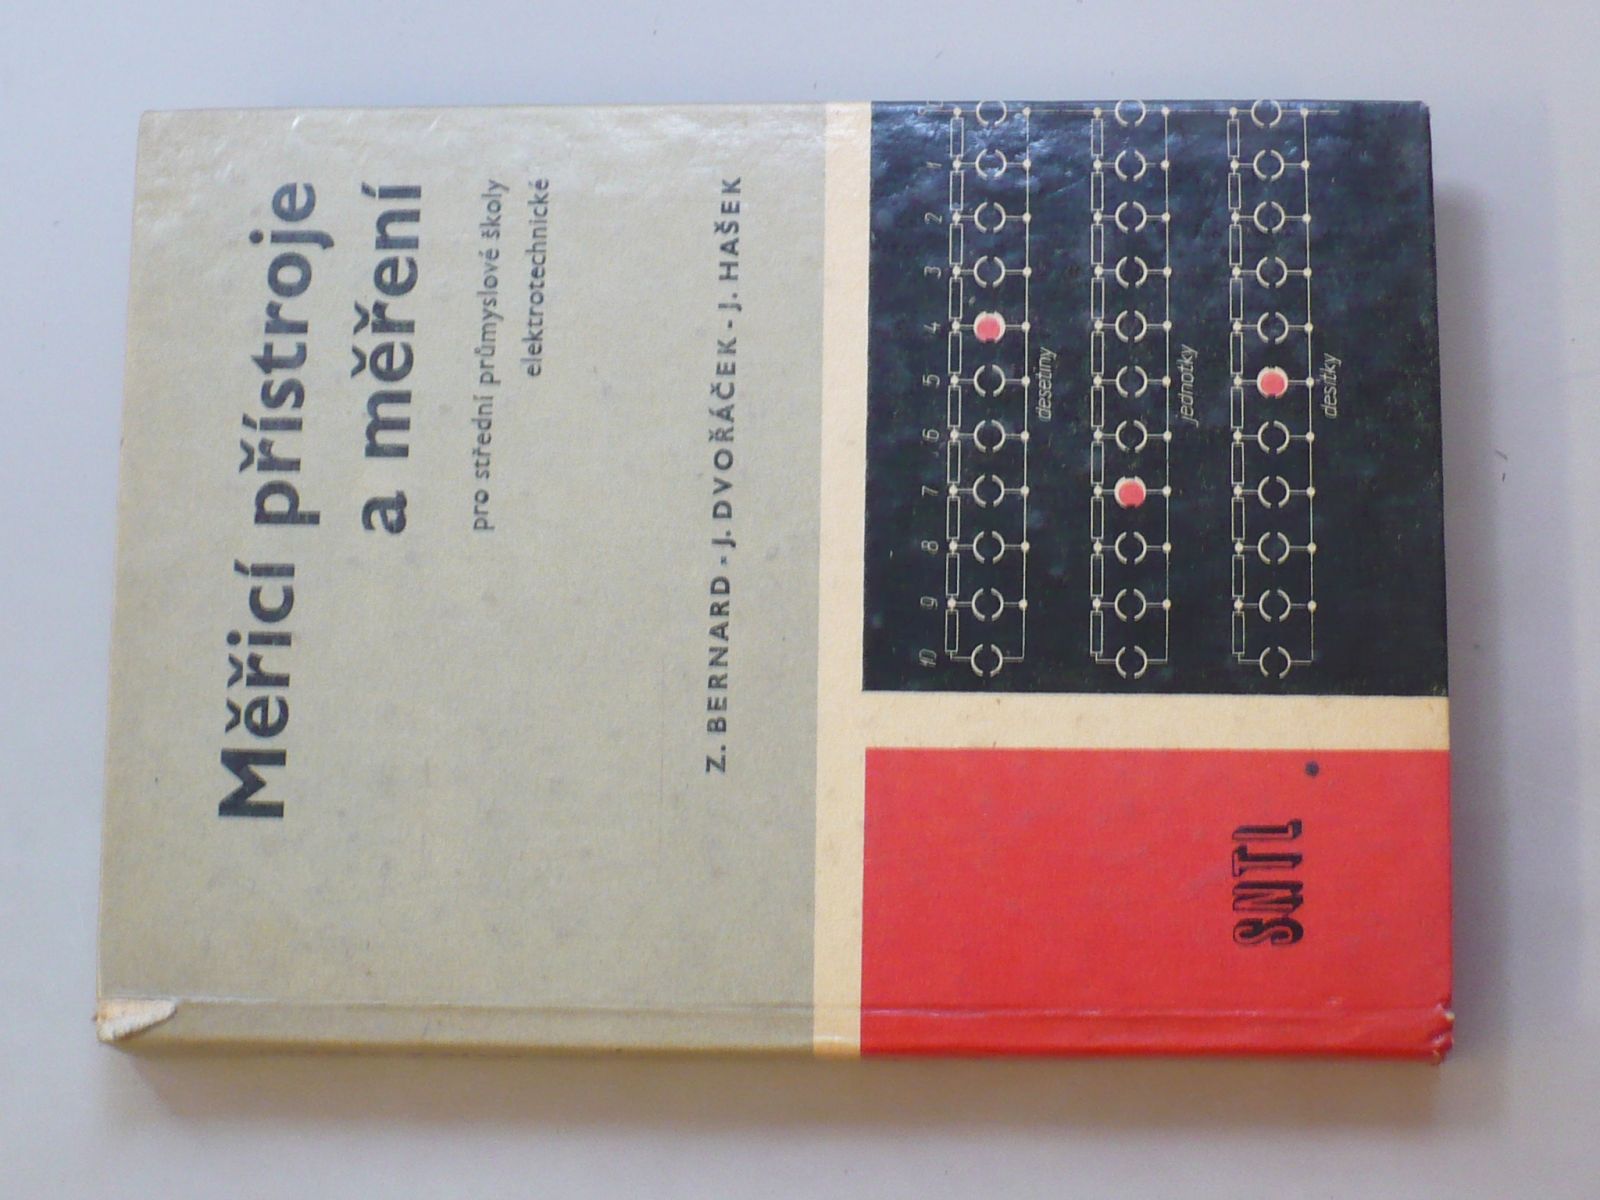 Z.Bernardl, j. Dvořáček, J. Hašek - Měřicí přístroje a měření (1969) pro střední průmyslové školy